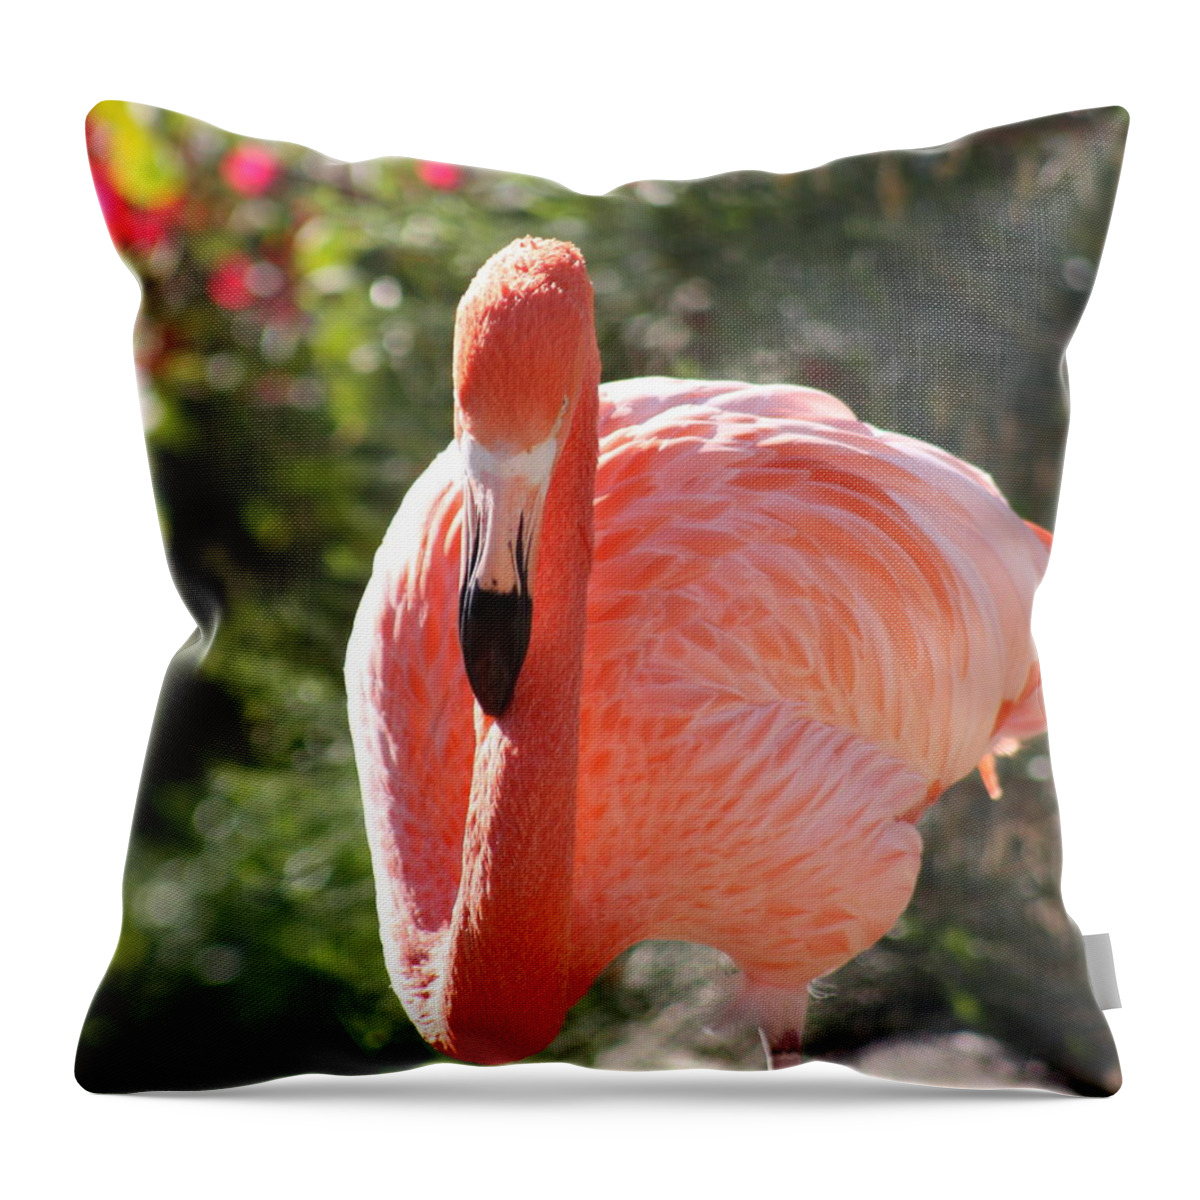 Flamingo Throw Pillow featuring the photograph Flamingo by Kim Galluzzo Wozniak